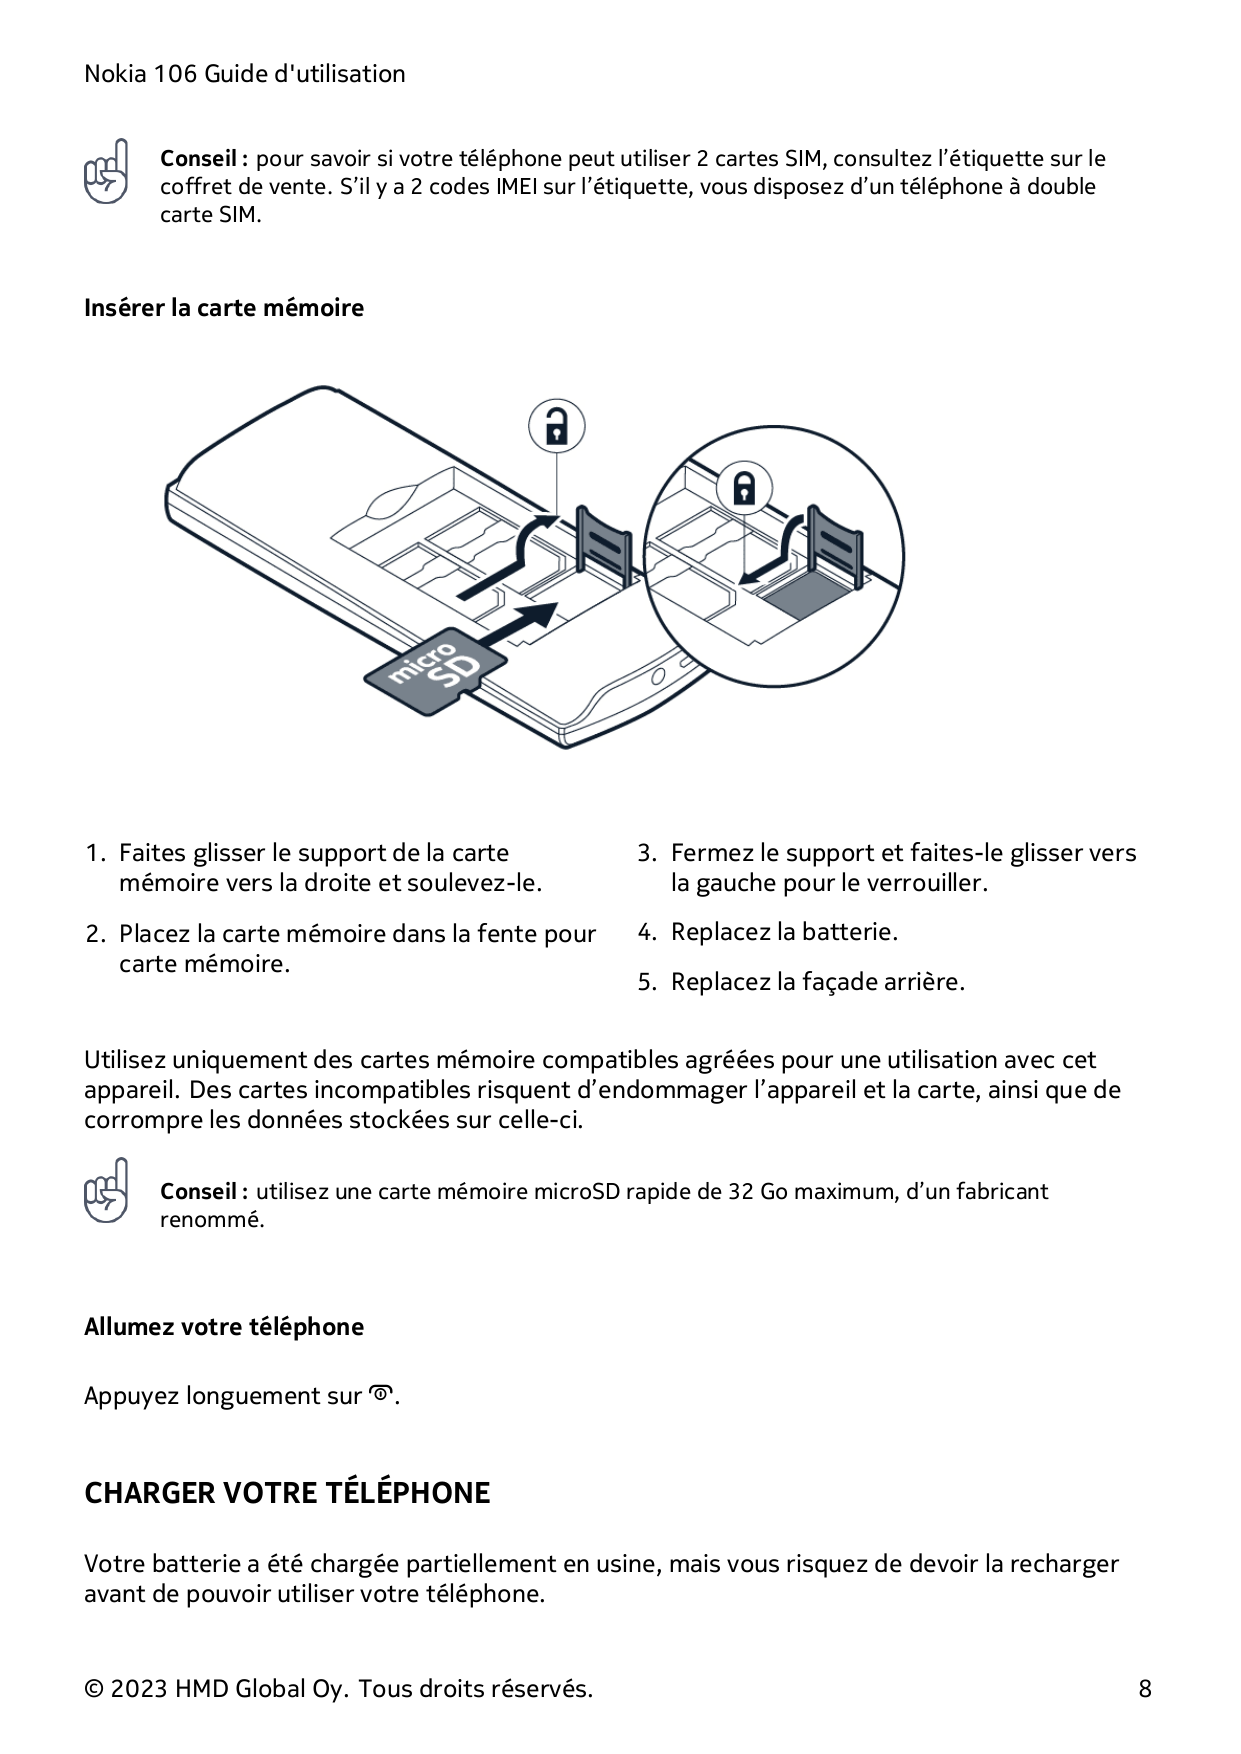 Nokia 106 Guide d'utilisationConseil : pour savoir si votre téléphone peut utiliser 2 cartes SIM, consultez l’étiquette sur leco